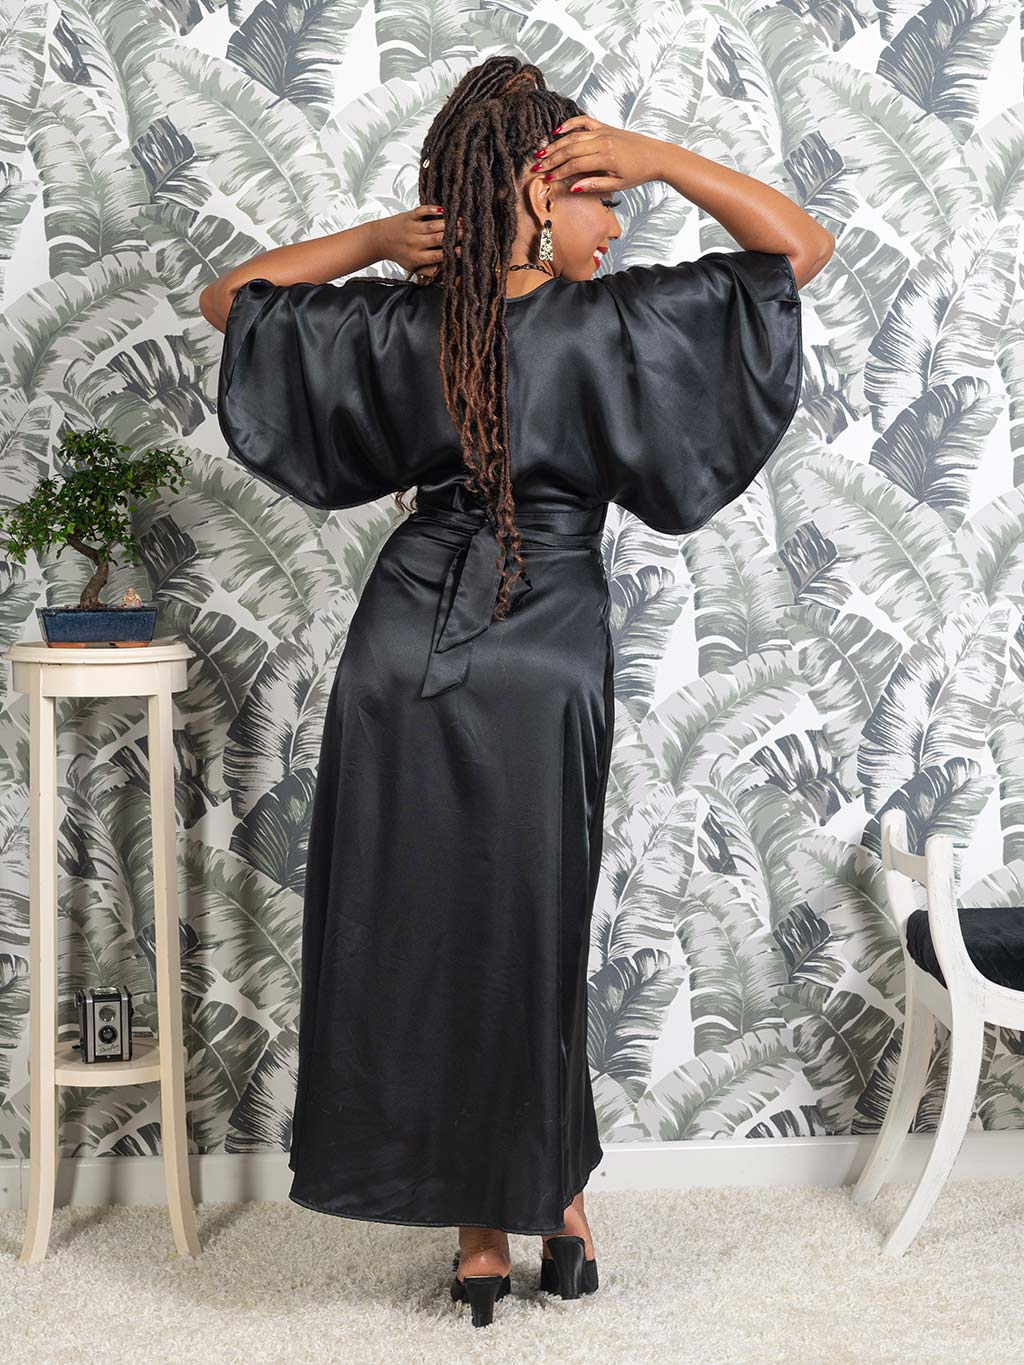 Dua Lipa Channels Morticia Addams in a Black Silk Robe | Vogue